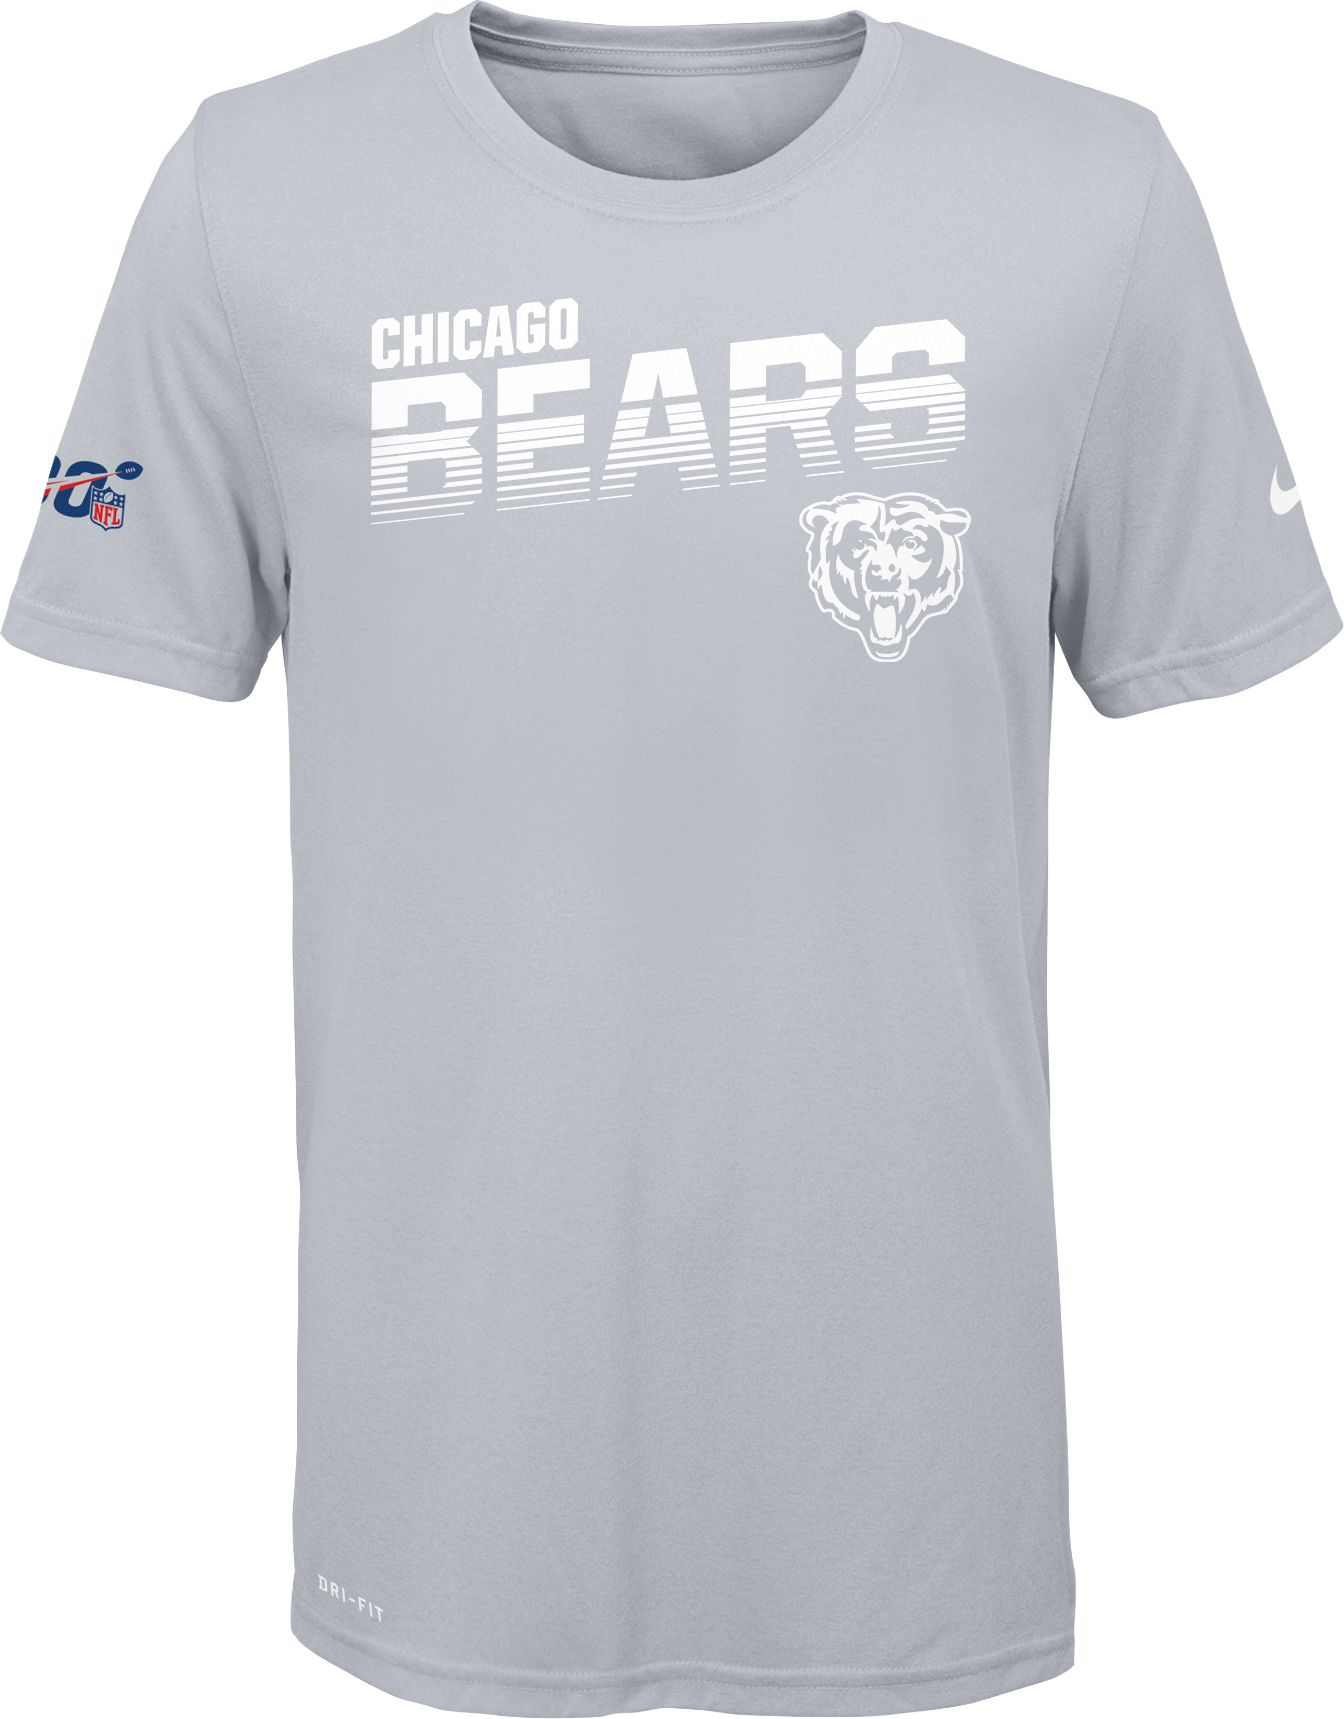 white chicago bears shirt